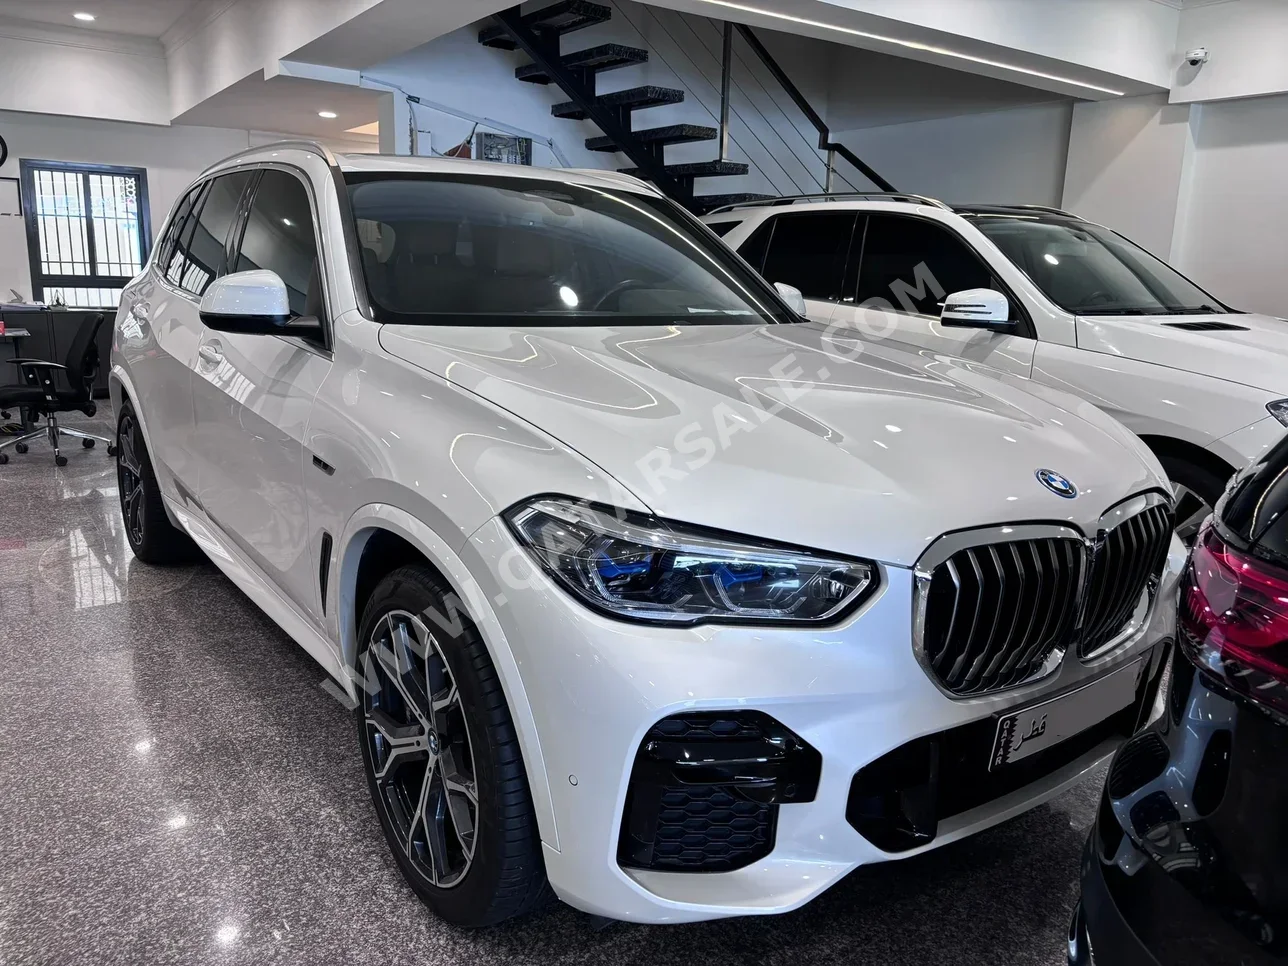 BMW  X-Series  X5  2022  Automatic  21,000 Km  8 Cylinder  Four Wheel Drive (4WD)  SUV  White  With Warranty